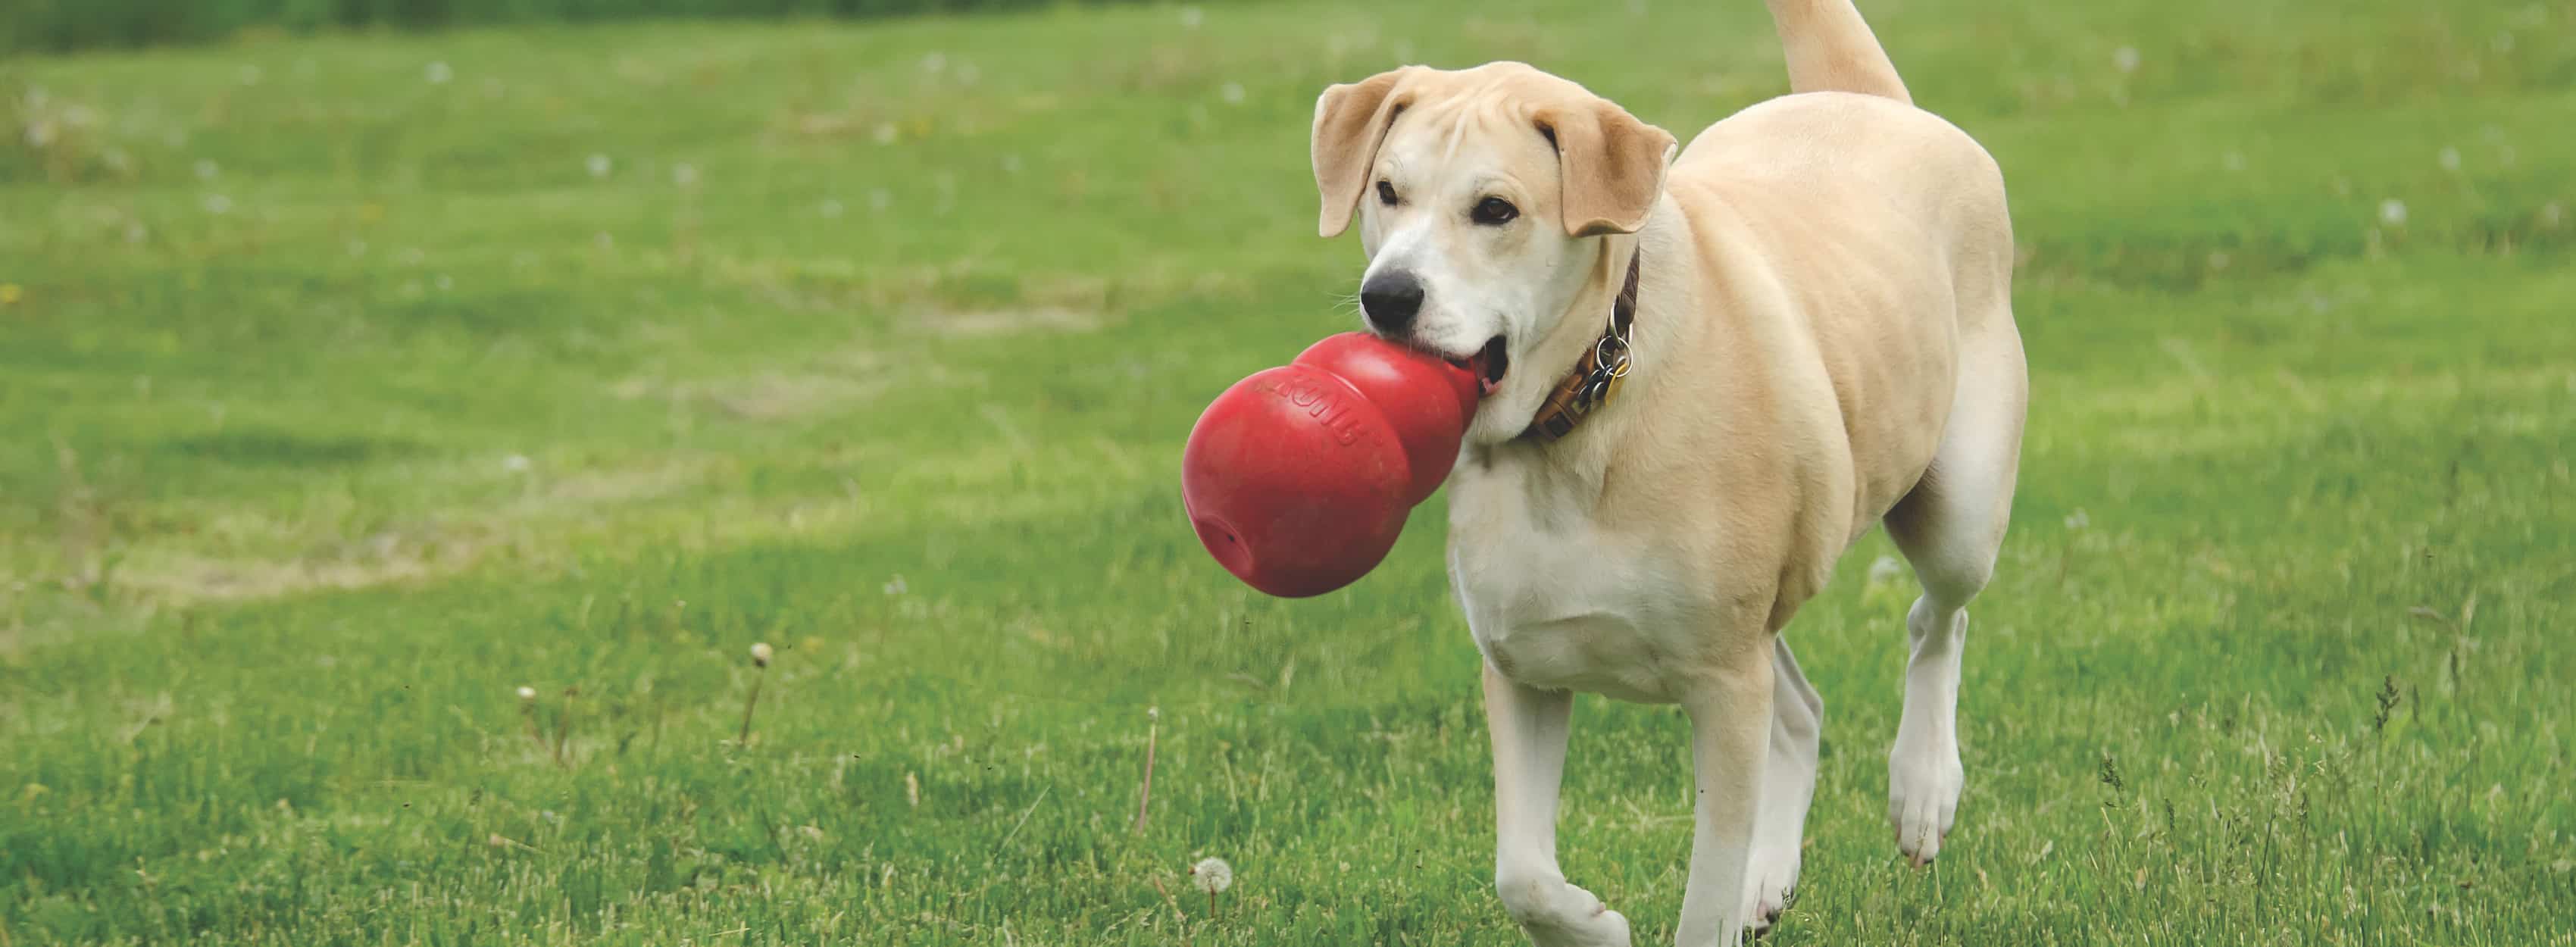 Cane dorato che corre con un grande giocattolo KONG nell'erba.